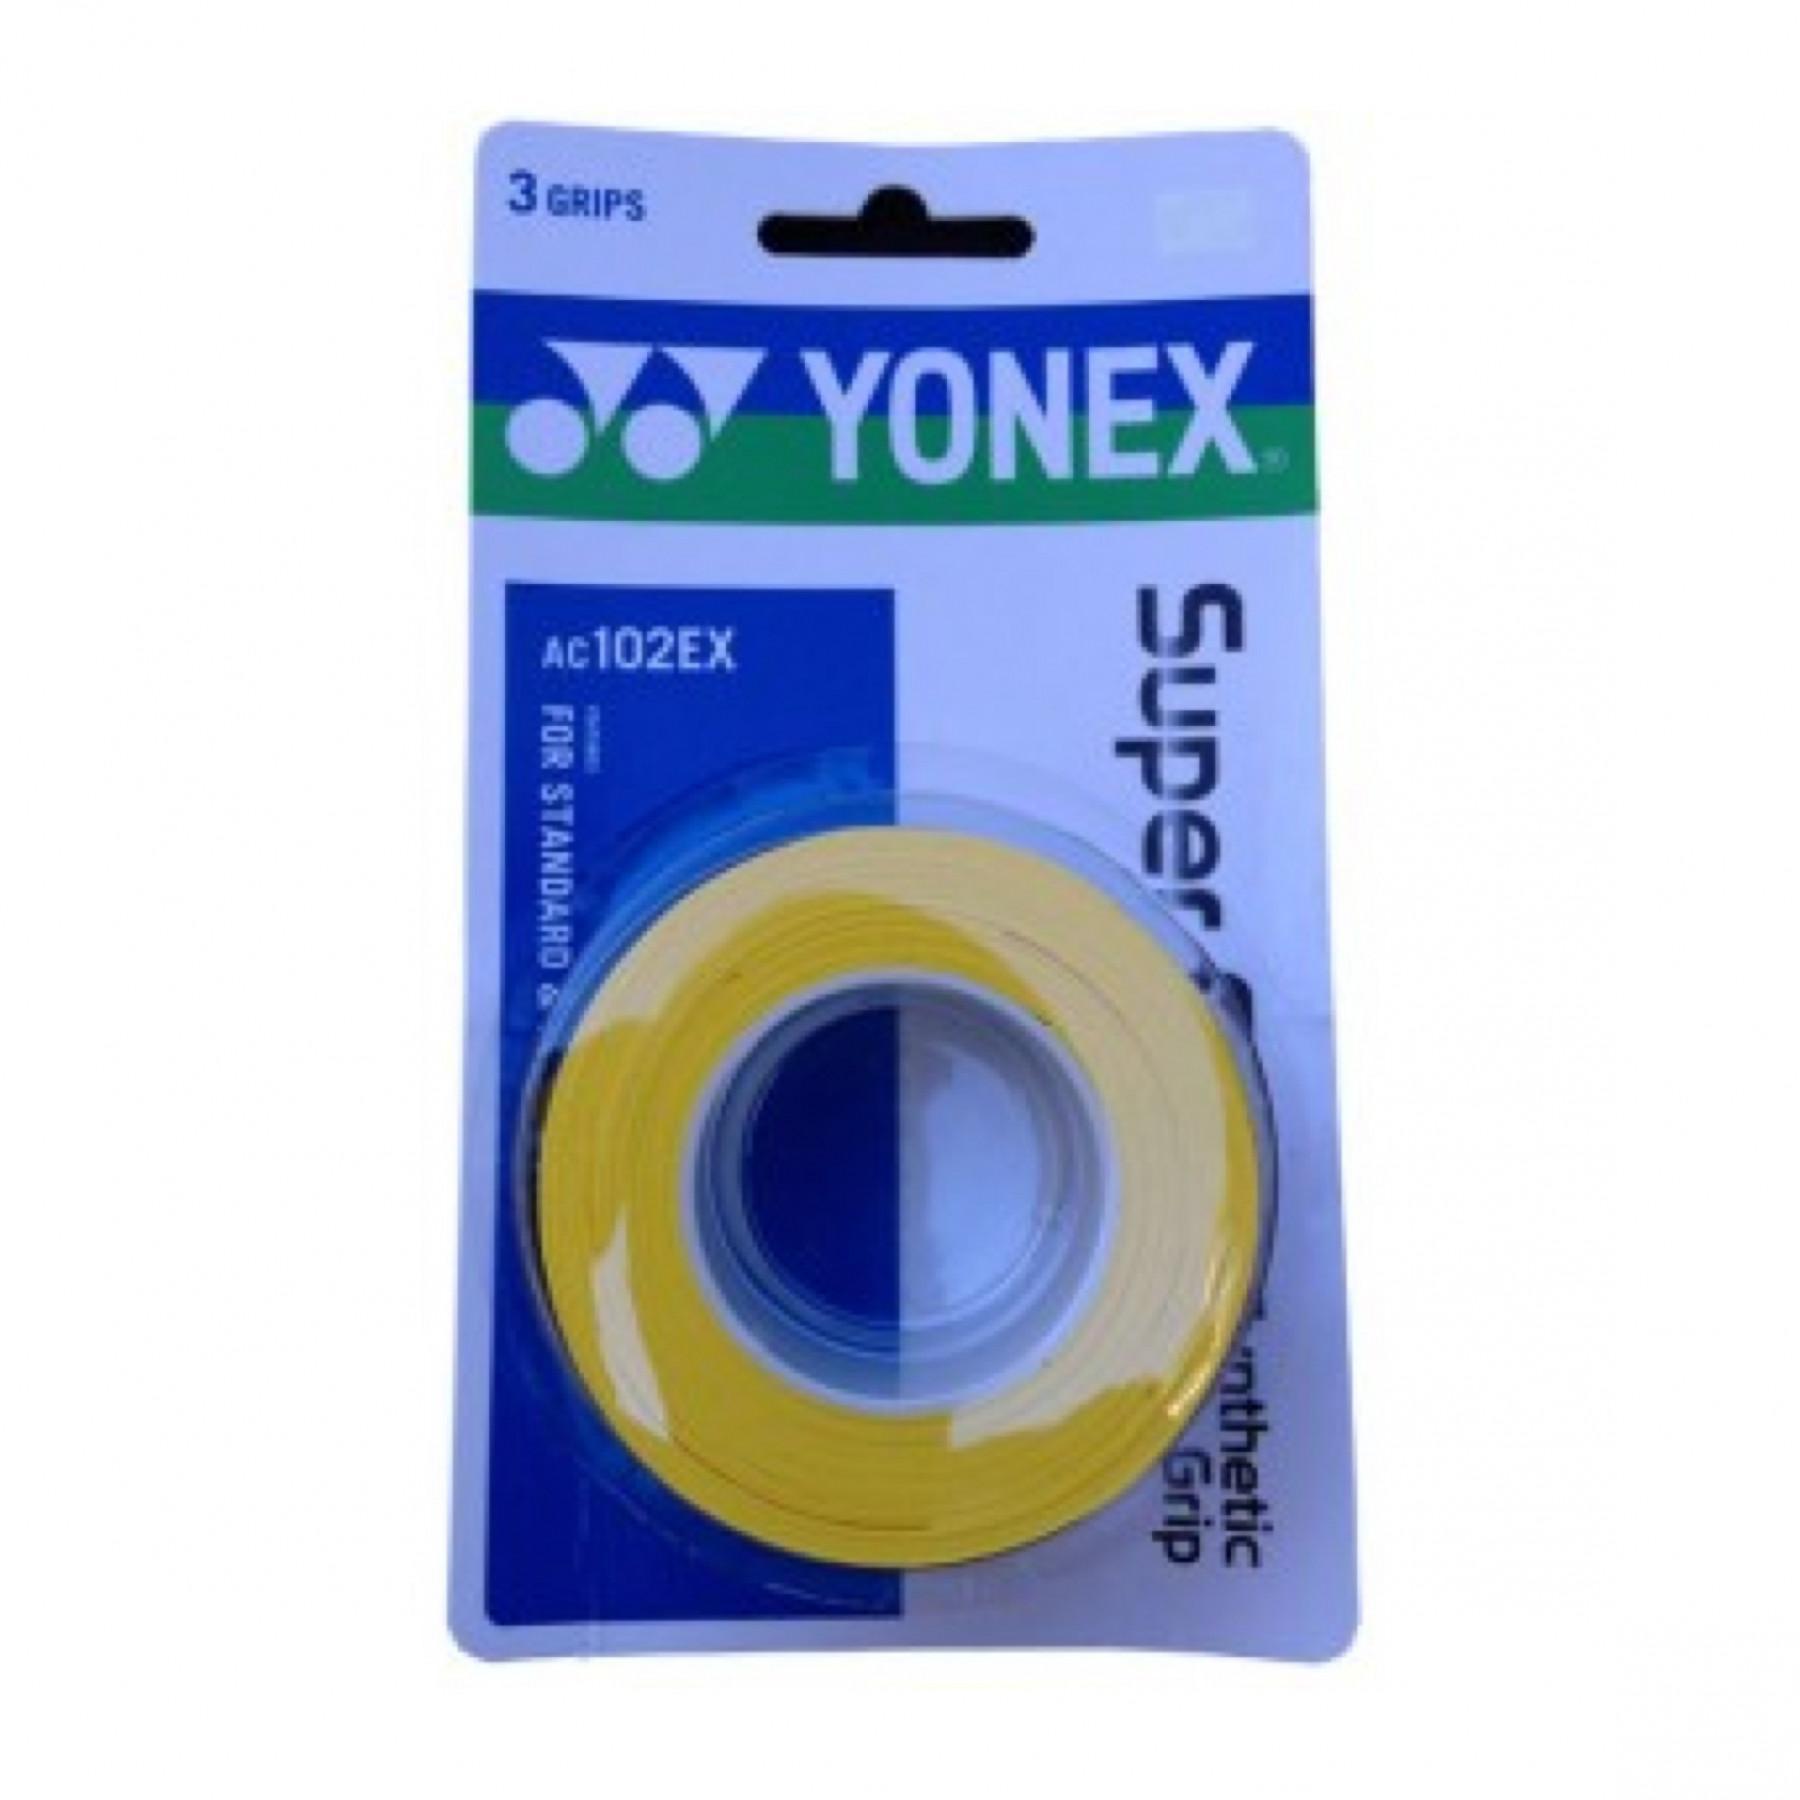 Övergrip Yonex AC102